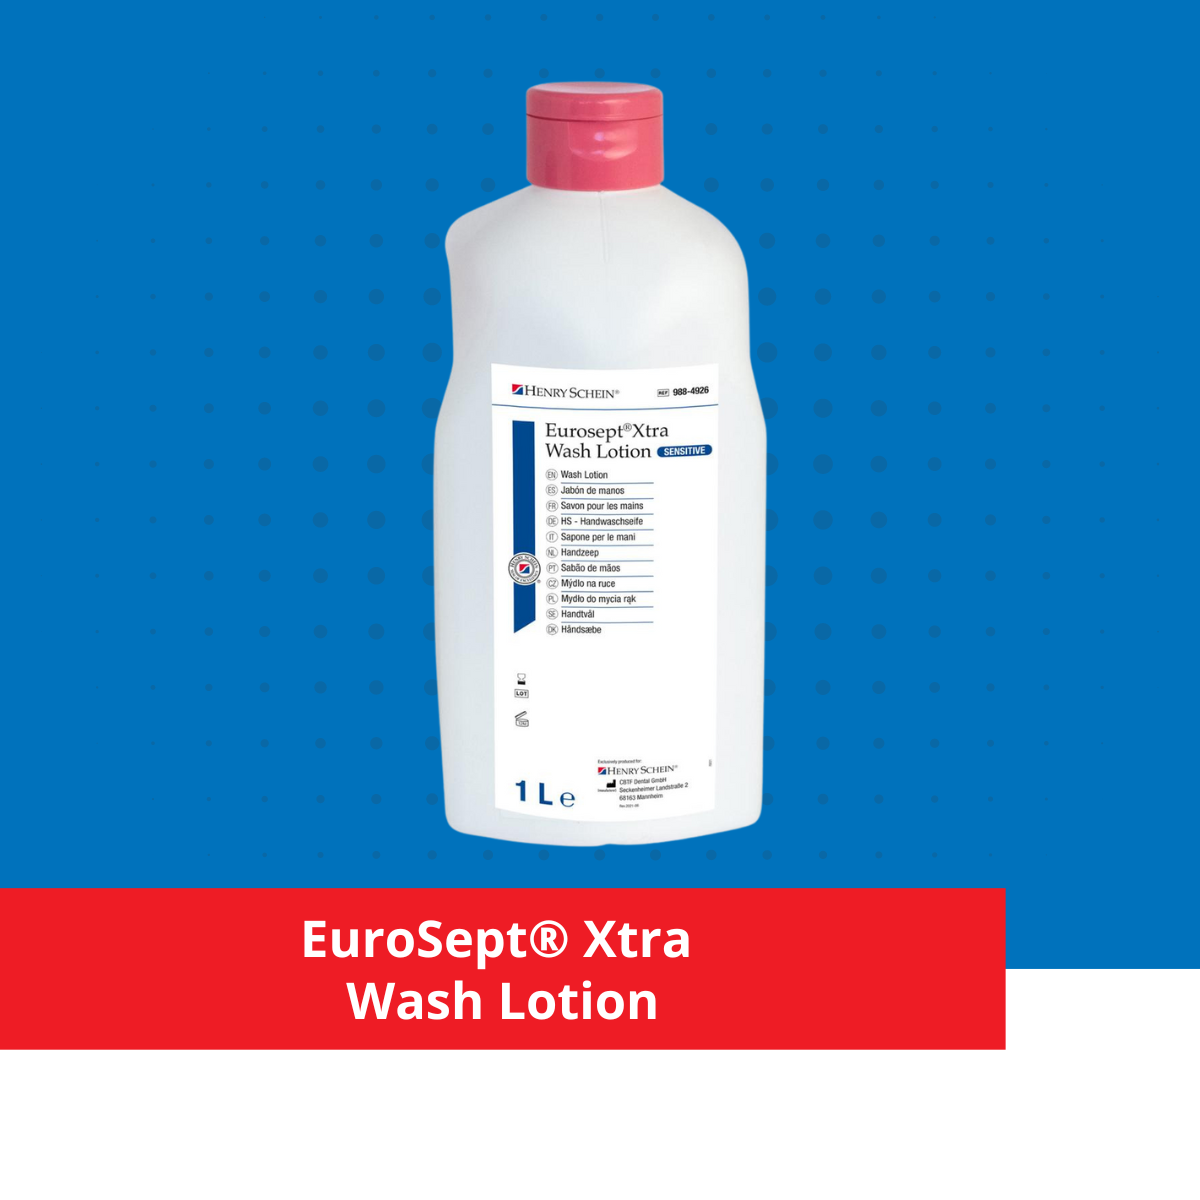 EuroSept Xtra wash lotion